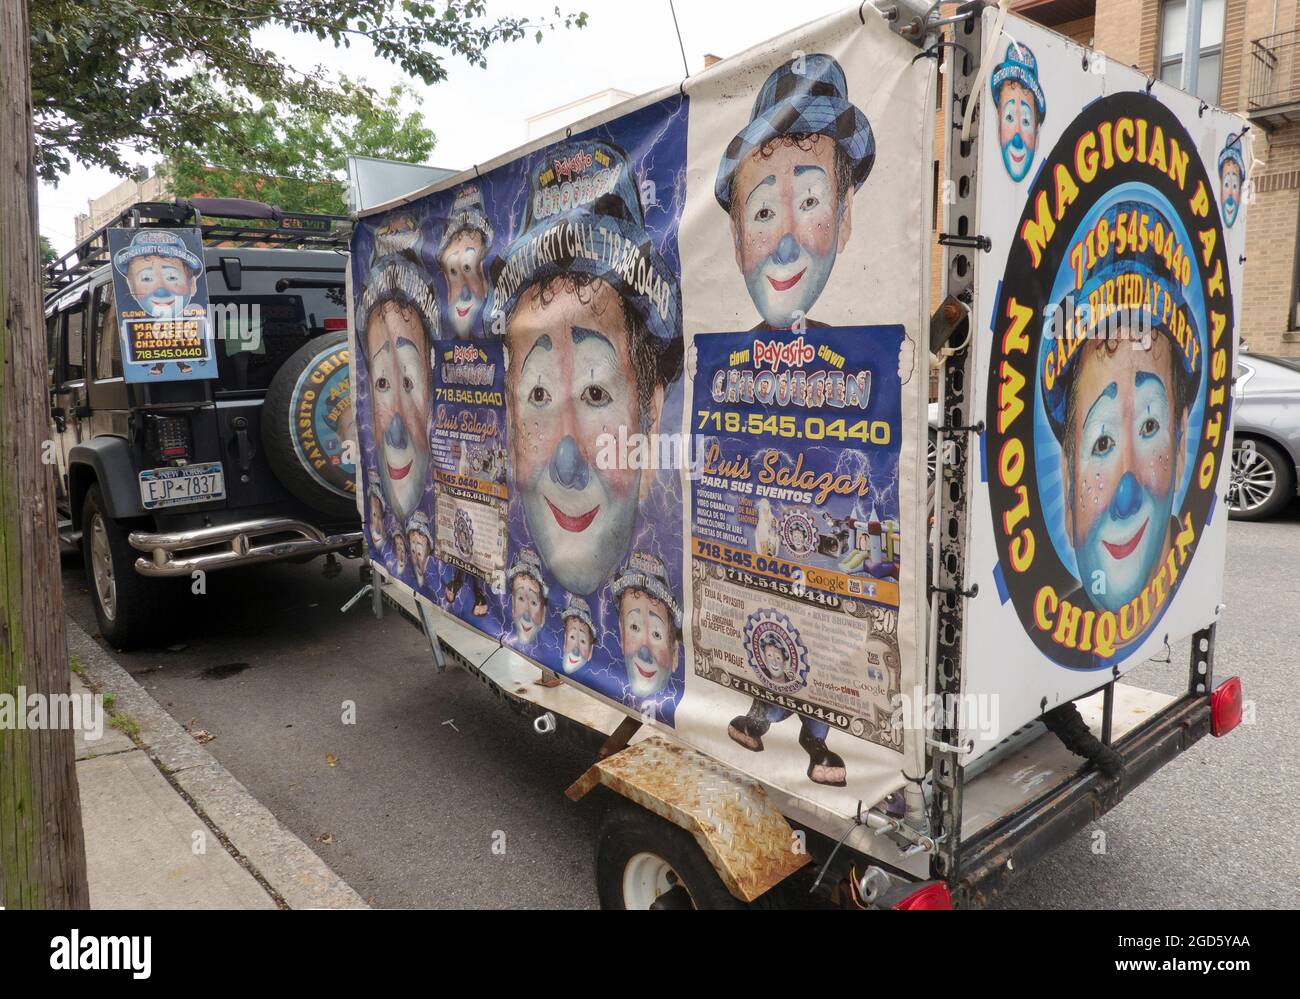 Ein SUV und Trailer mit farbenfrohen Anzeigen für Payasito Chiquitin, einen spanischsprachigen Clown, Zauberer und Entertainer. In Astoria, Queens, New York. Stockfoto